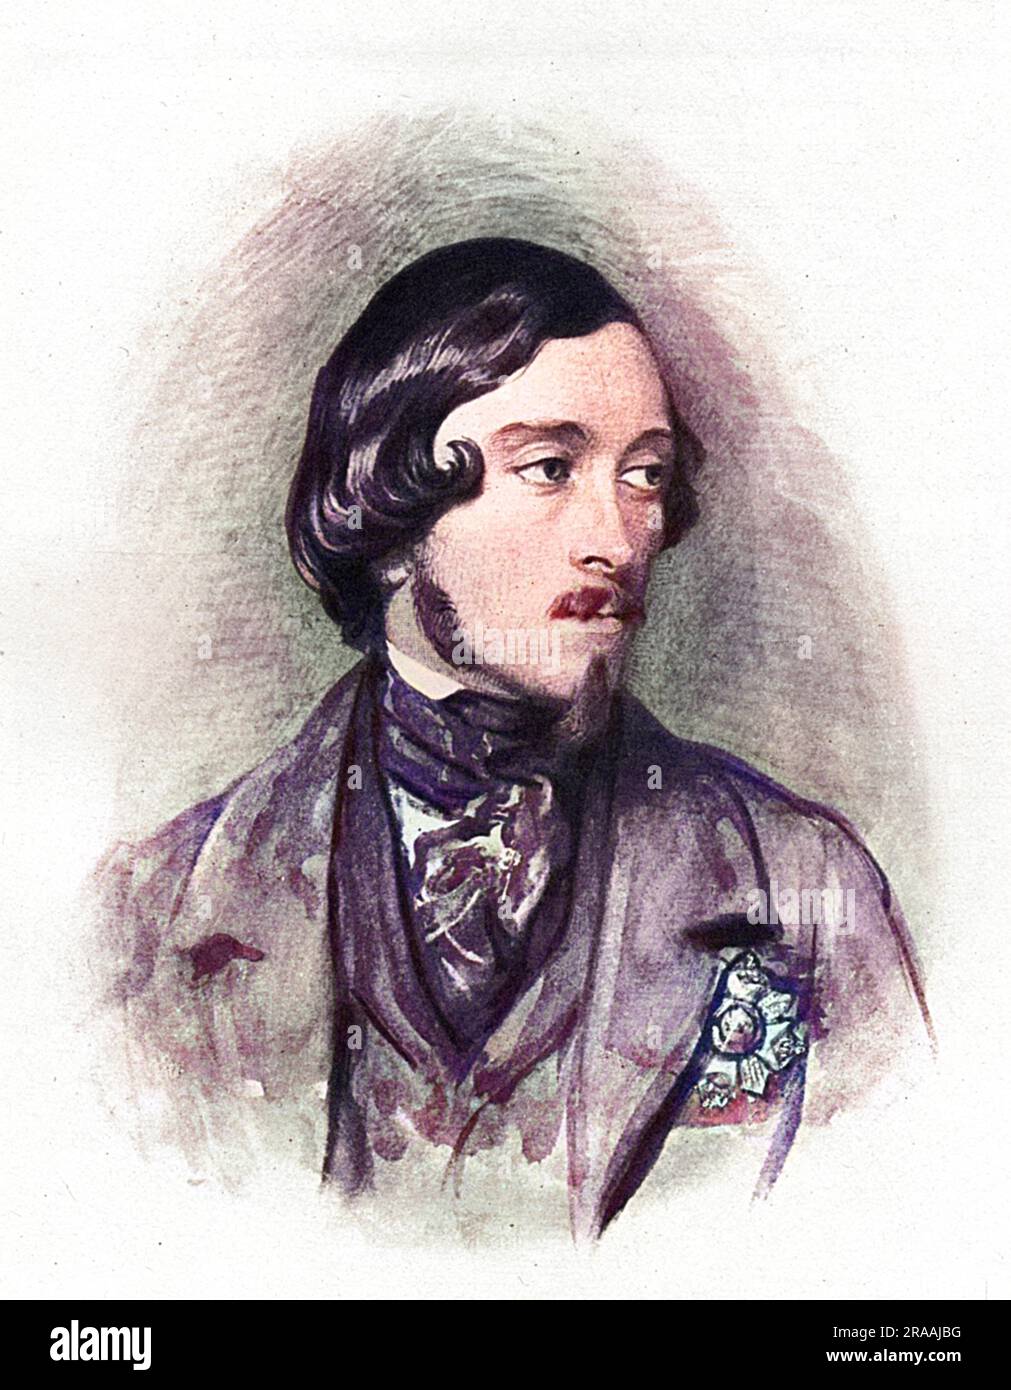 Ernst II., Herzog von Sachsen-Coburg und Gotha (1818-1893), Bruder des Prinzen Albert Prince Consort. Datum: 1830 s Stockfoto